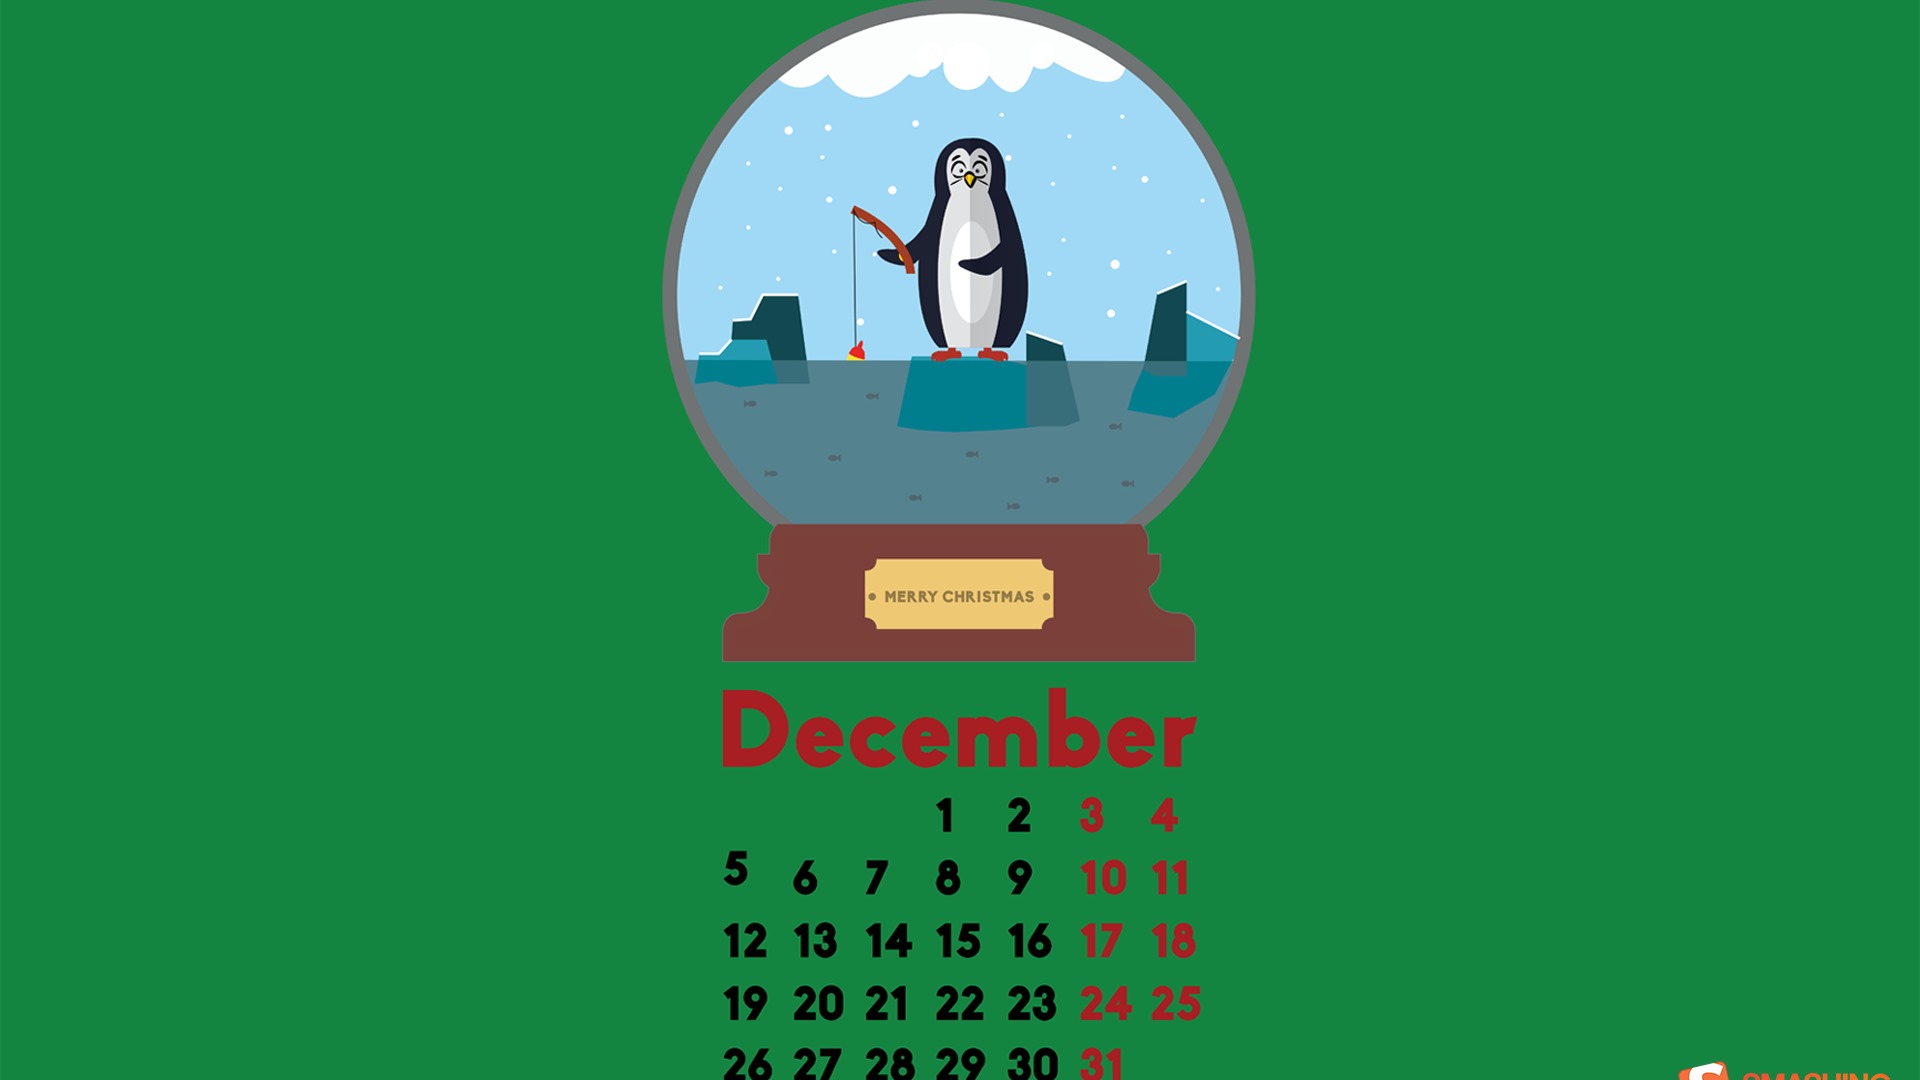 December 2016 Christmas theme calendar wallpaper (2) #8 - 1920x1080